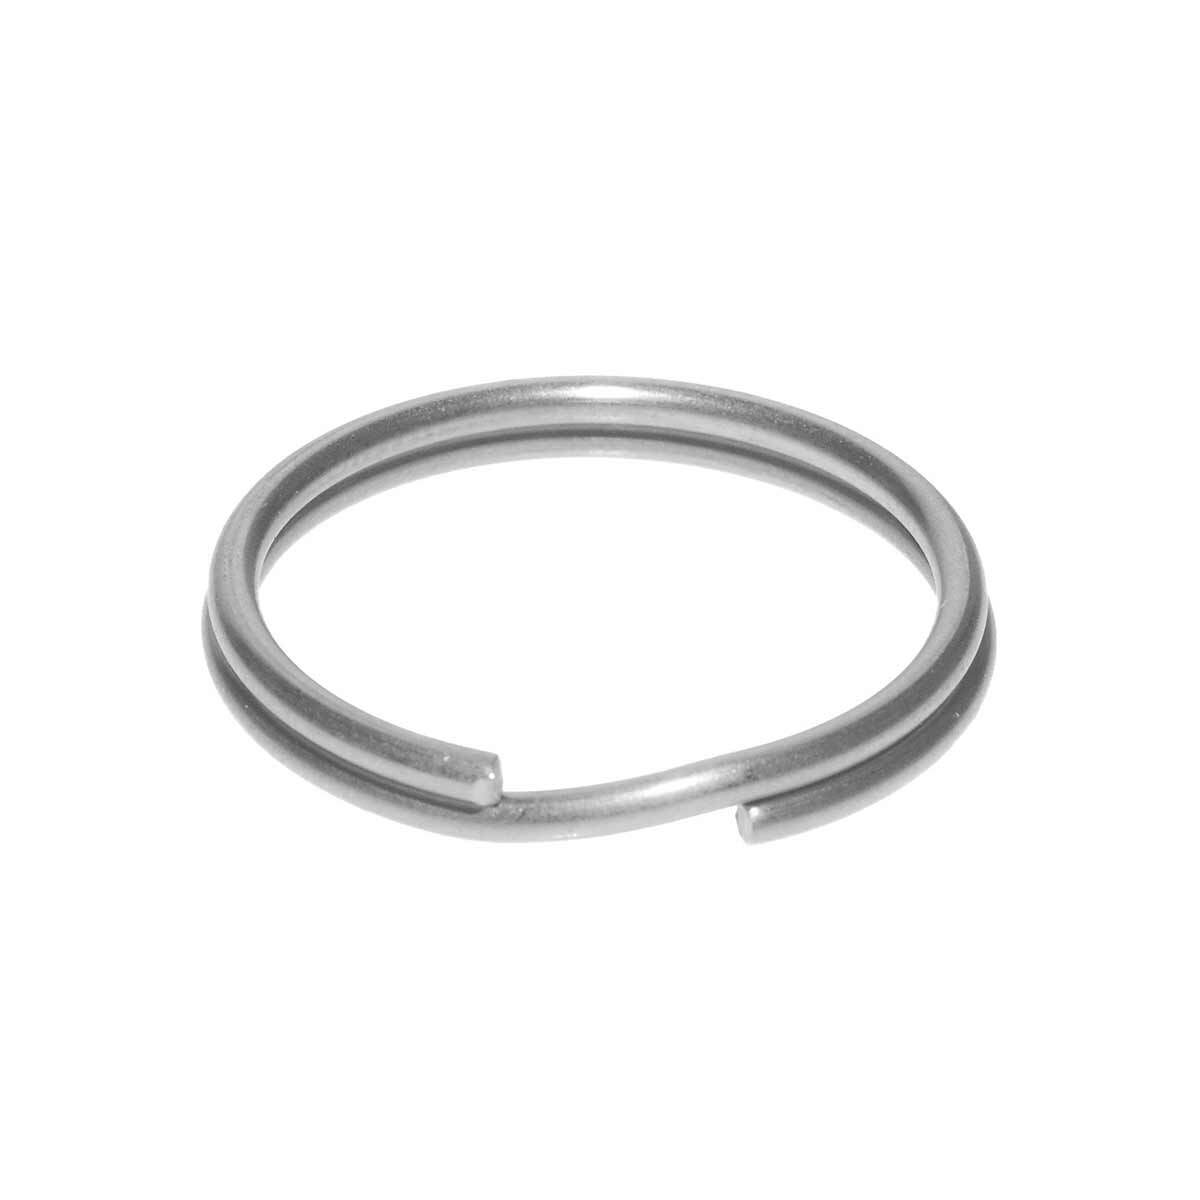 Stainless Steel Split Rings